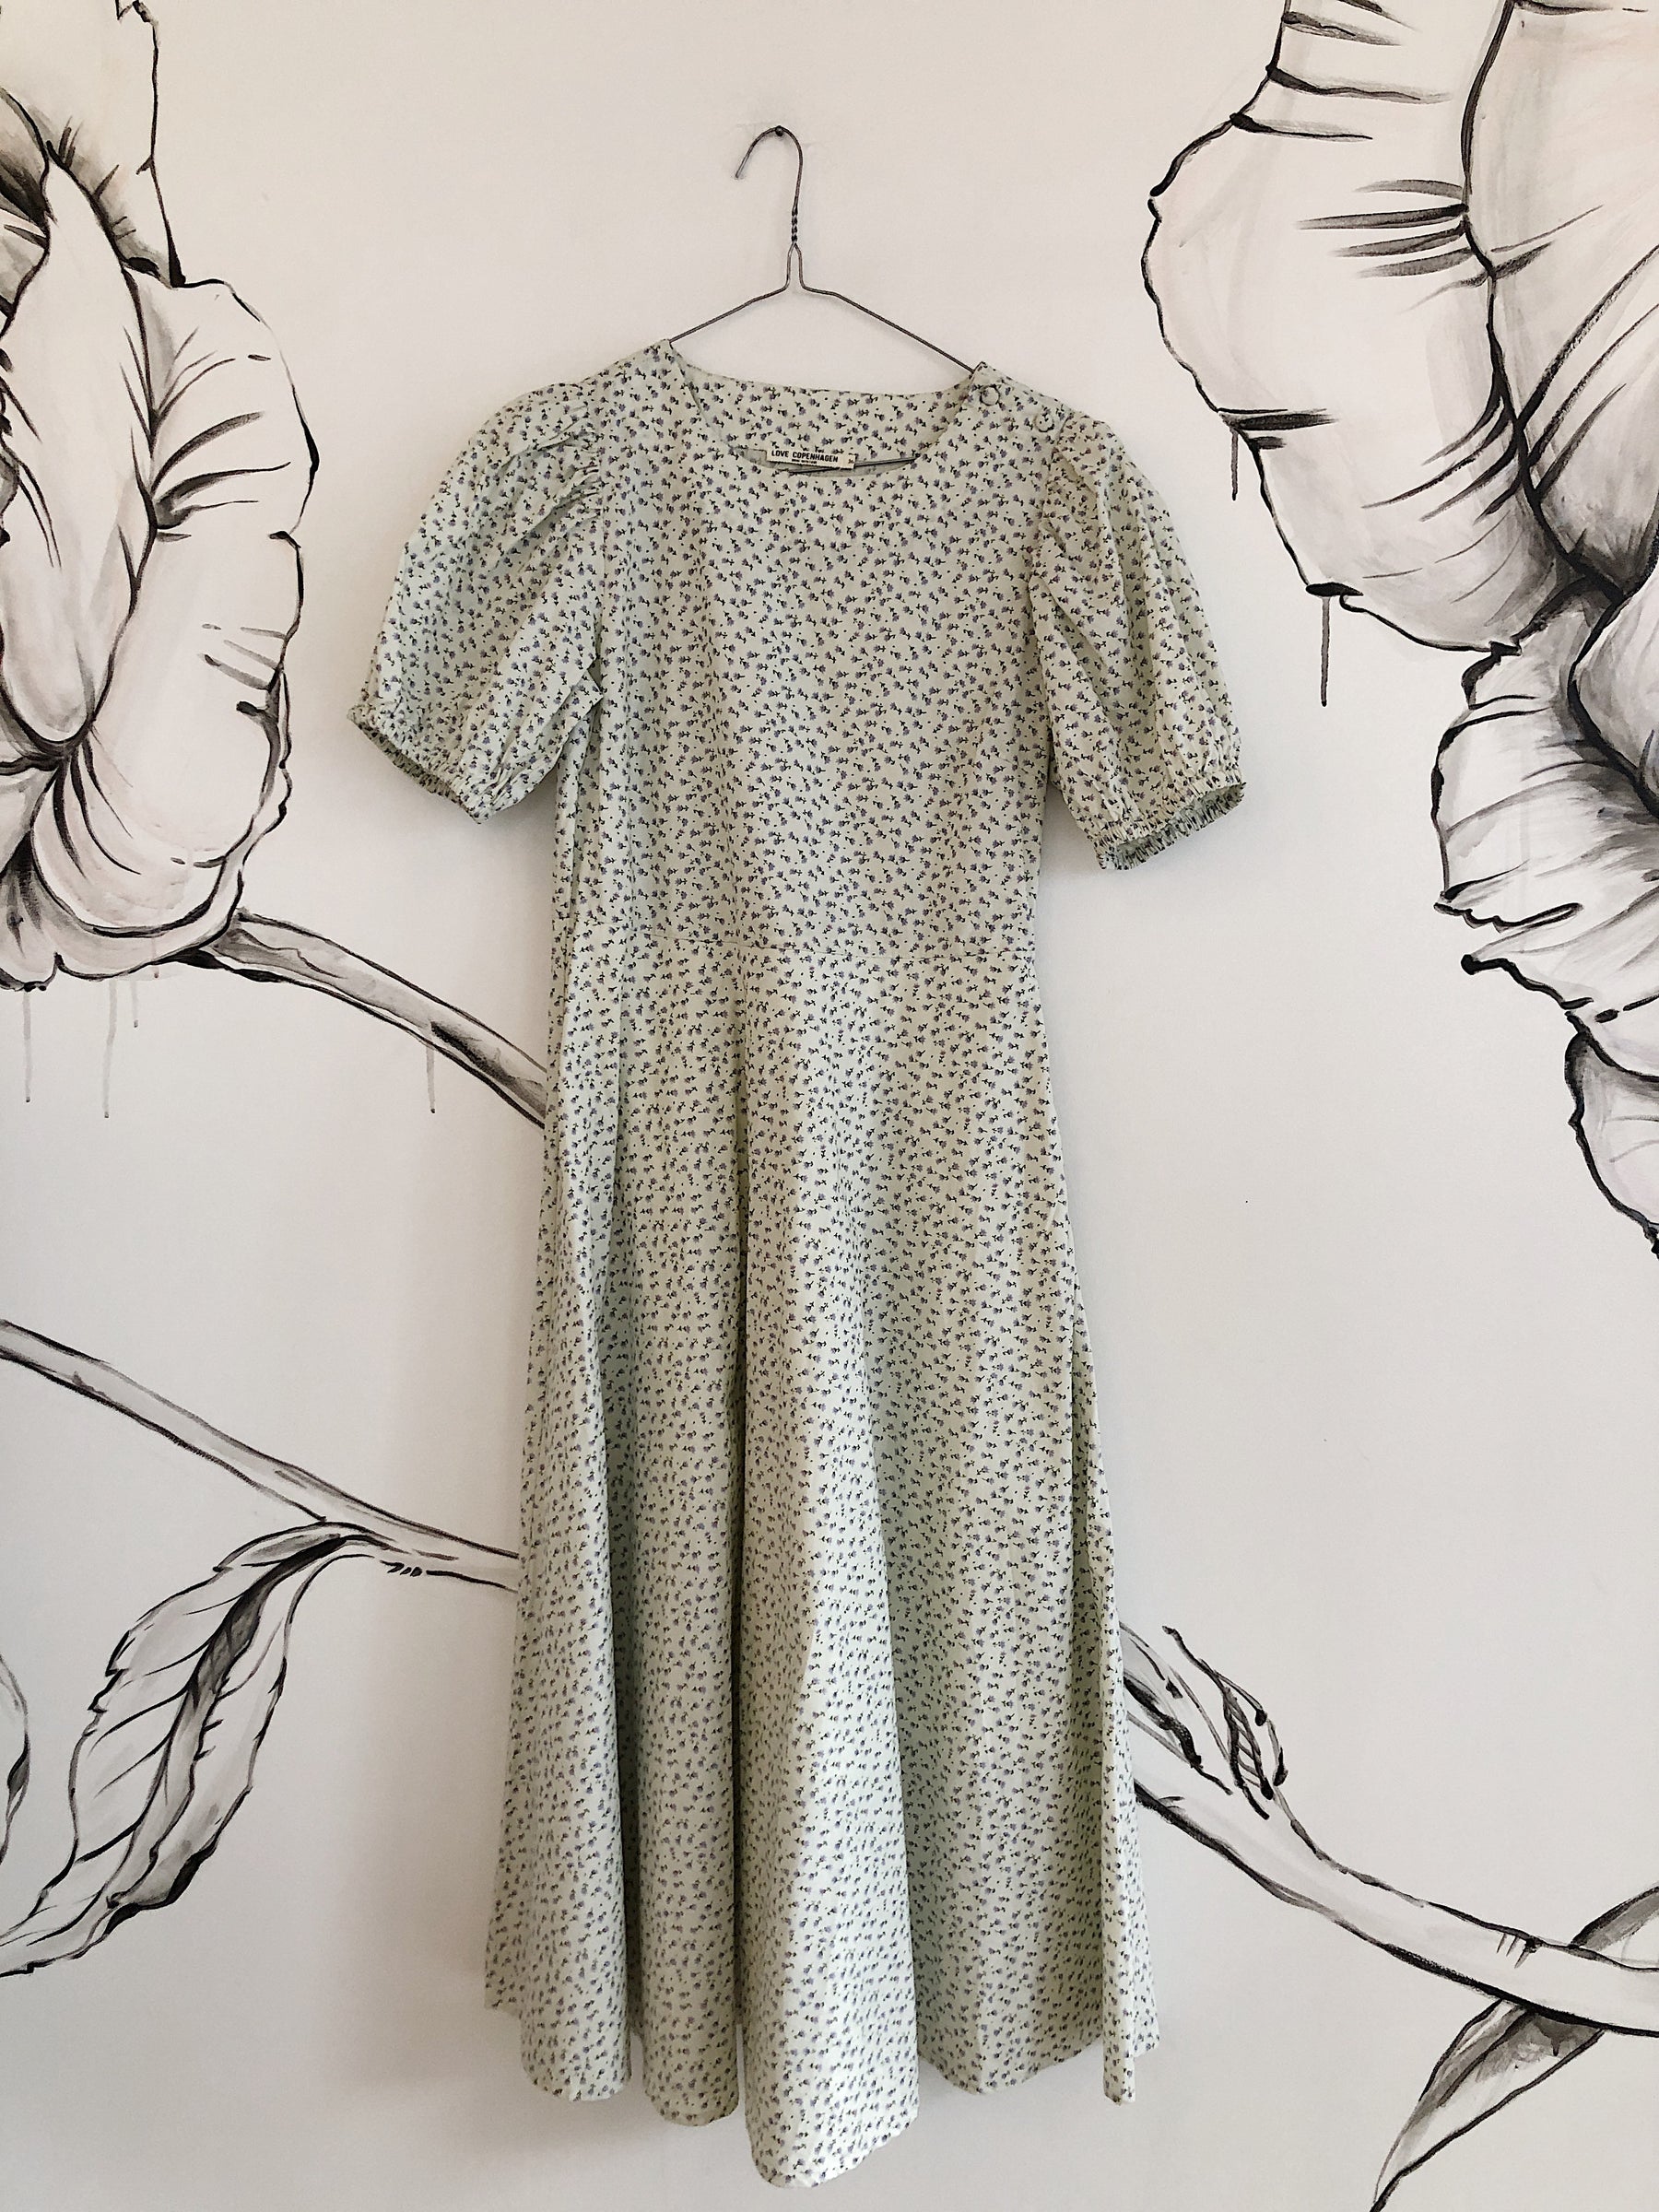 Genbrugstøj online kjoler - shop Love hos TSW